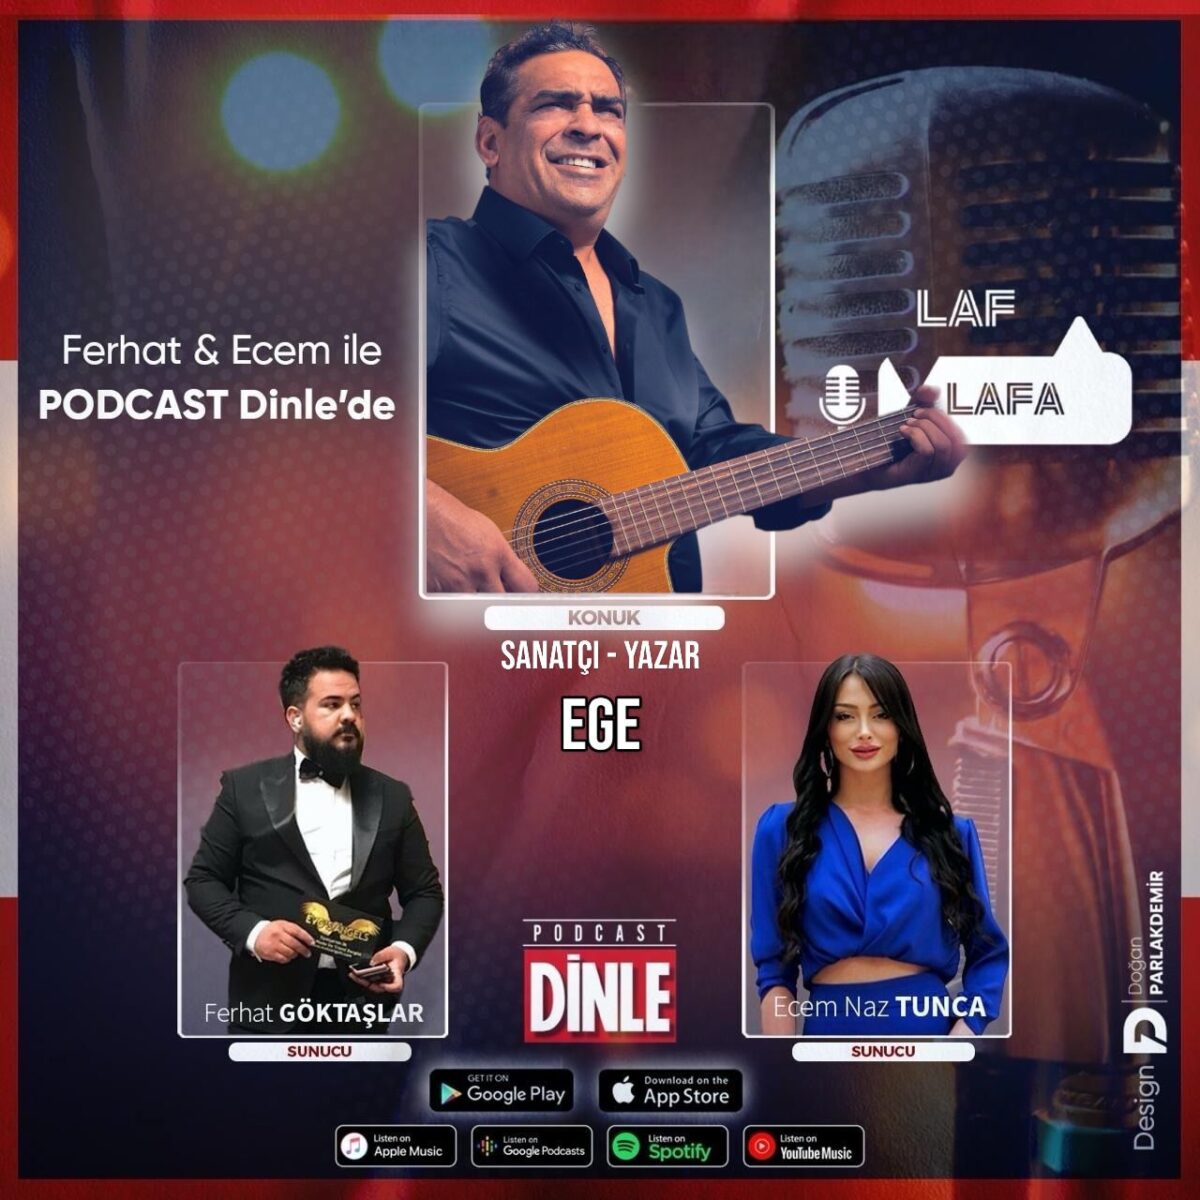 Şarkıcı, Yazar – EGE | Ferhat & Ecem’le Laf Lafa